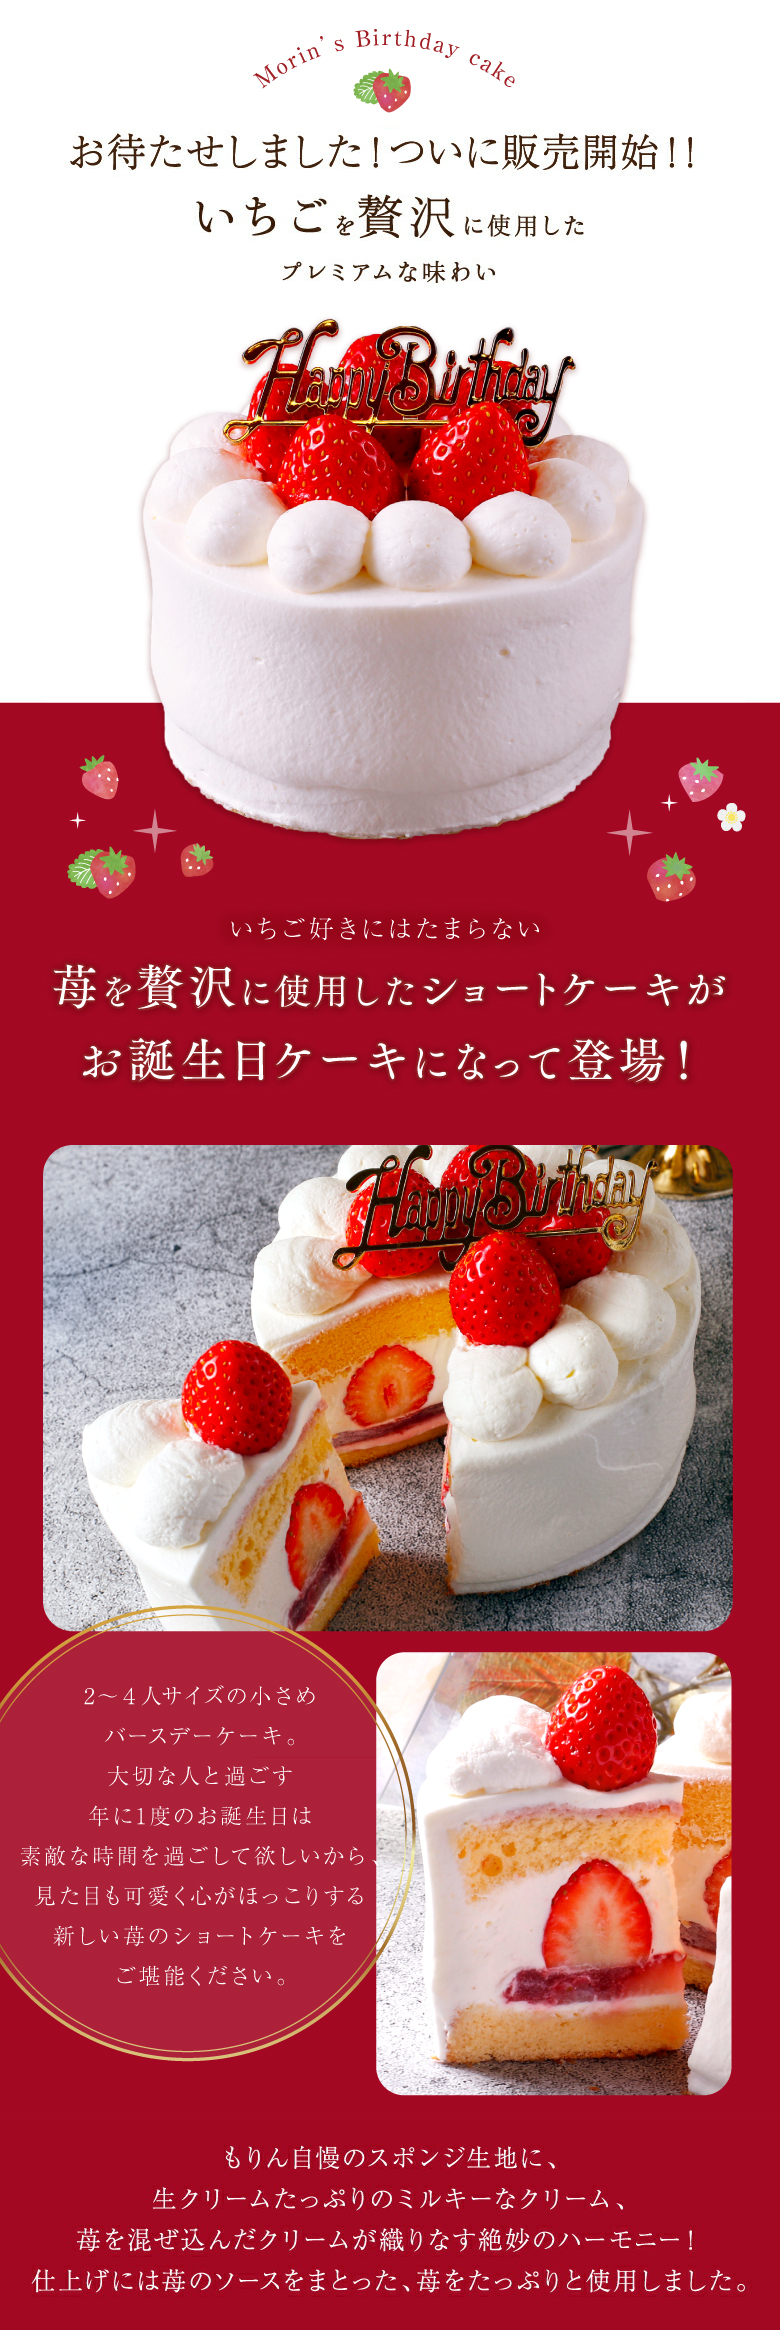 送料無料 お誕生日ケーキ 2人 4号 苺 12cm いちご 4人 ショートケーキ イチゴ バースデーケーキ